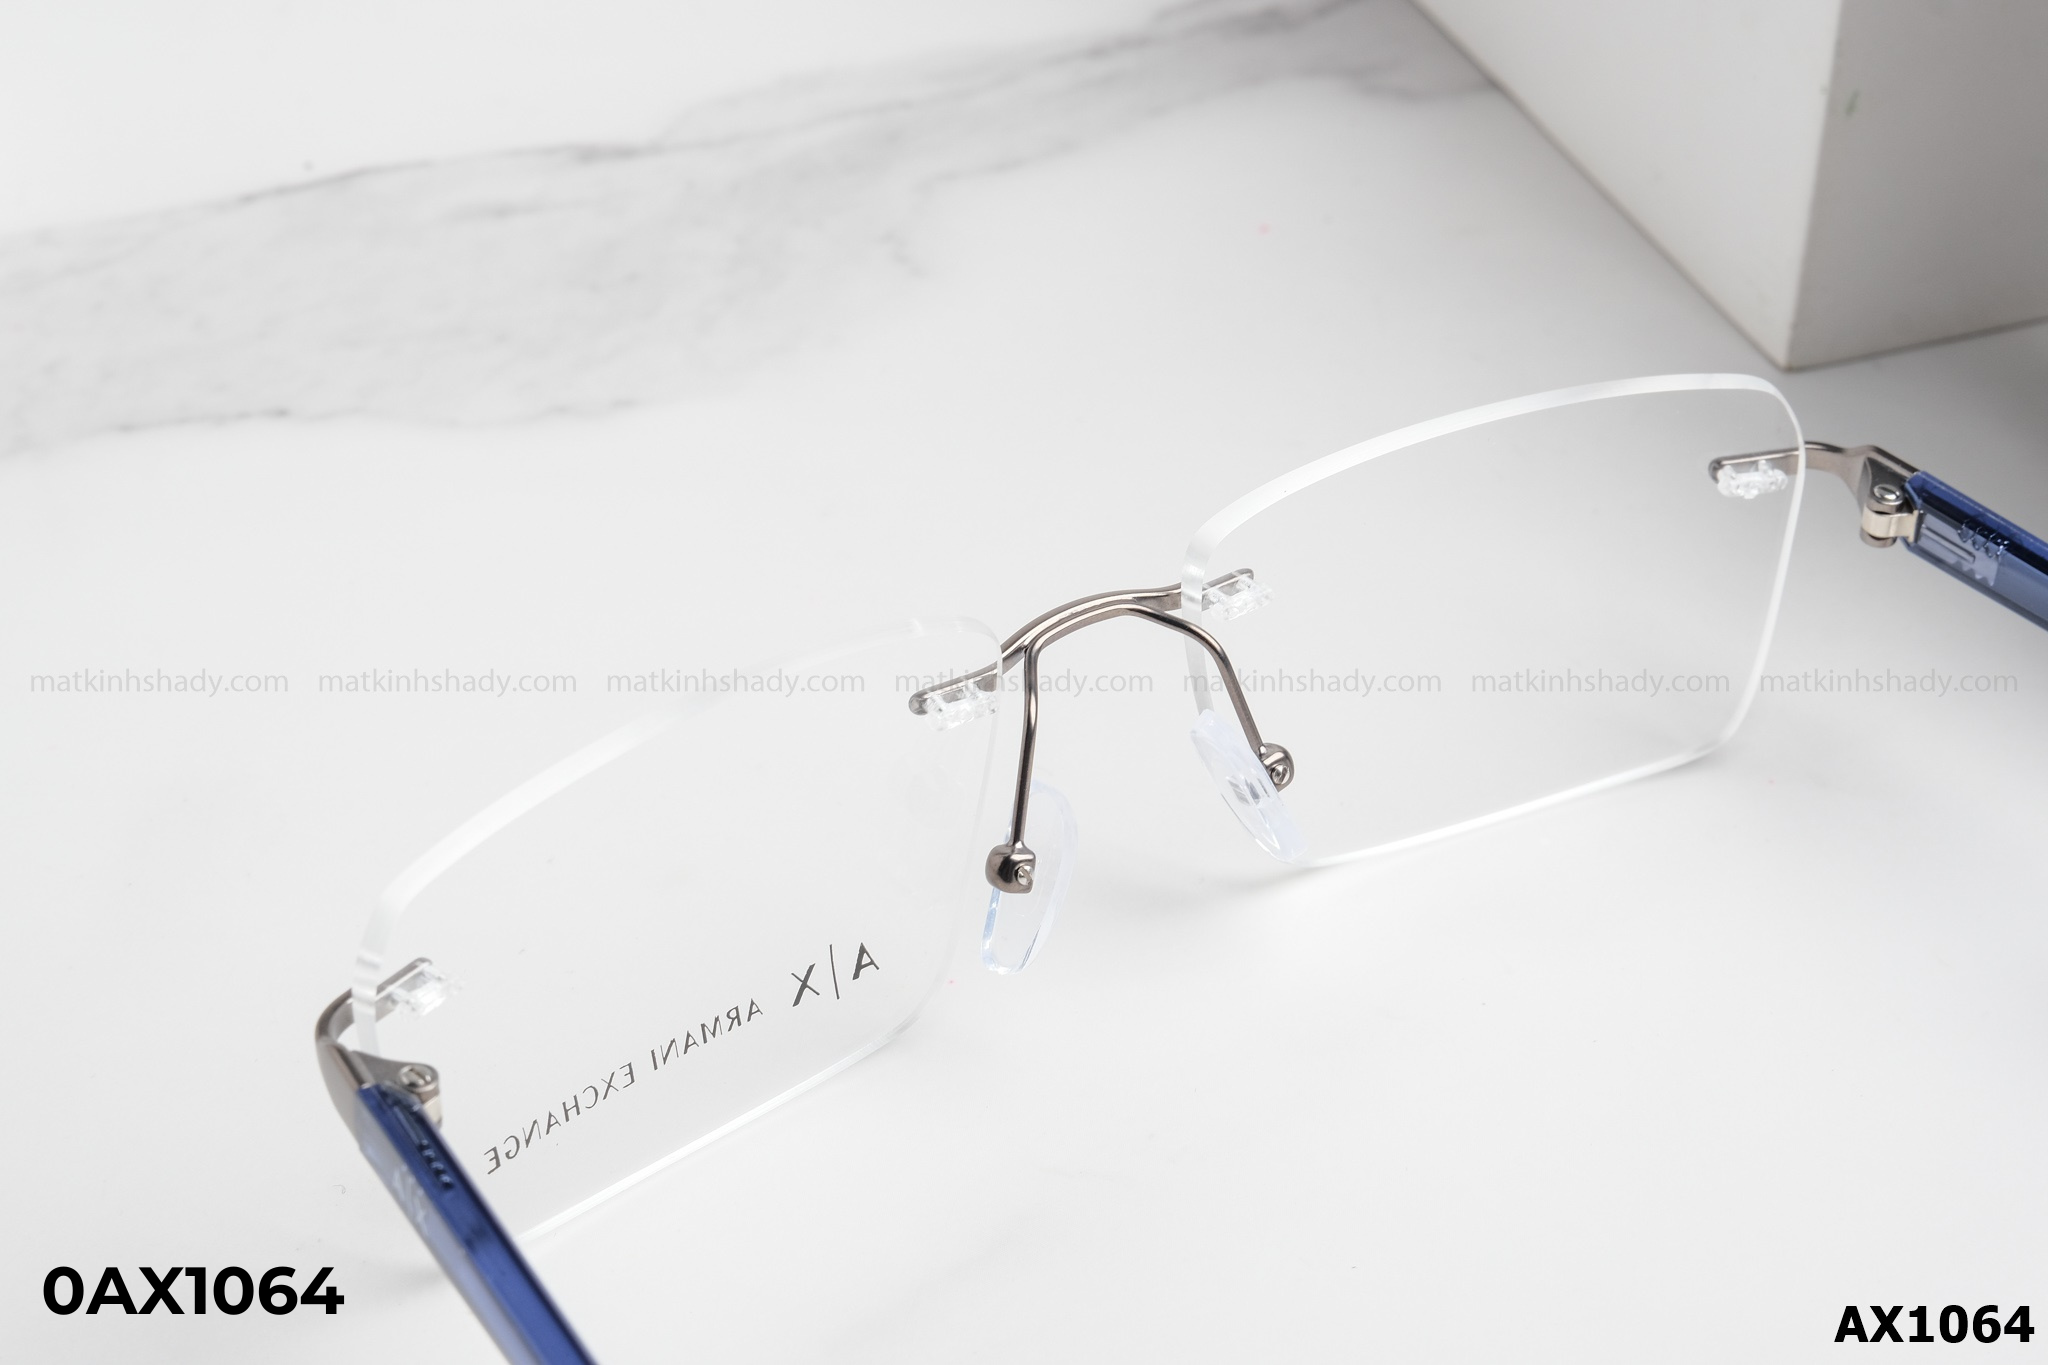  Armani Exchange Eyewear - Glasses - 0AX1064 